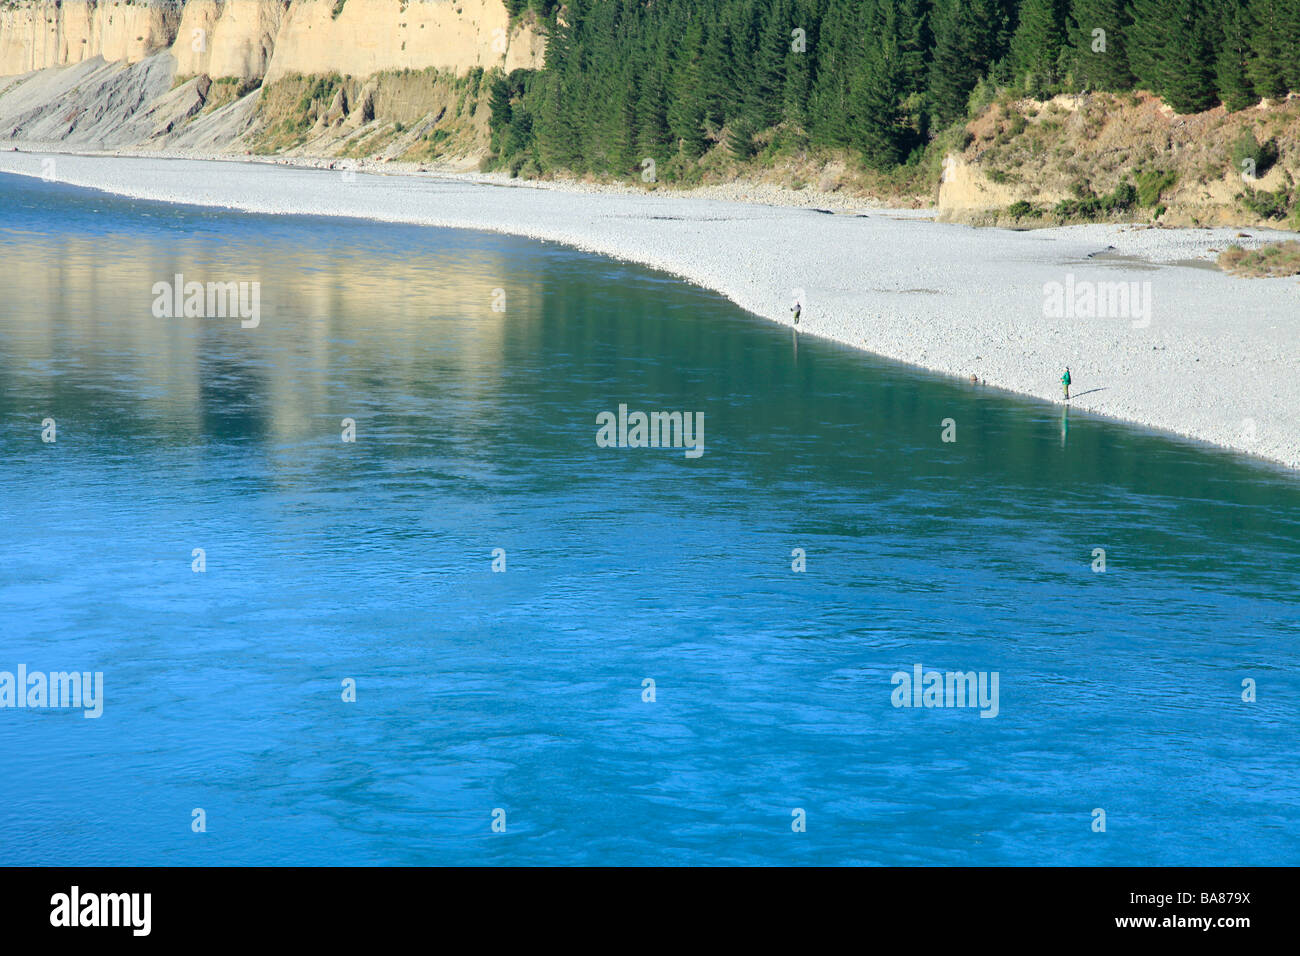 La pesca del salmone nel blu glaciale acqua fresca del fiume Rakaia, Canterbury, Isola del Sud, Nuova Zelanda Foto Stock